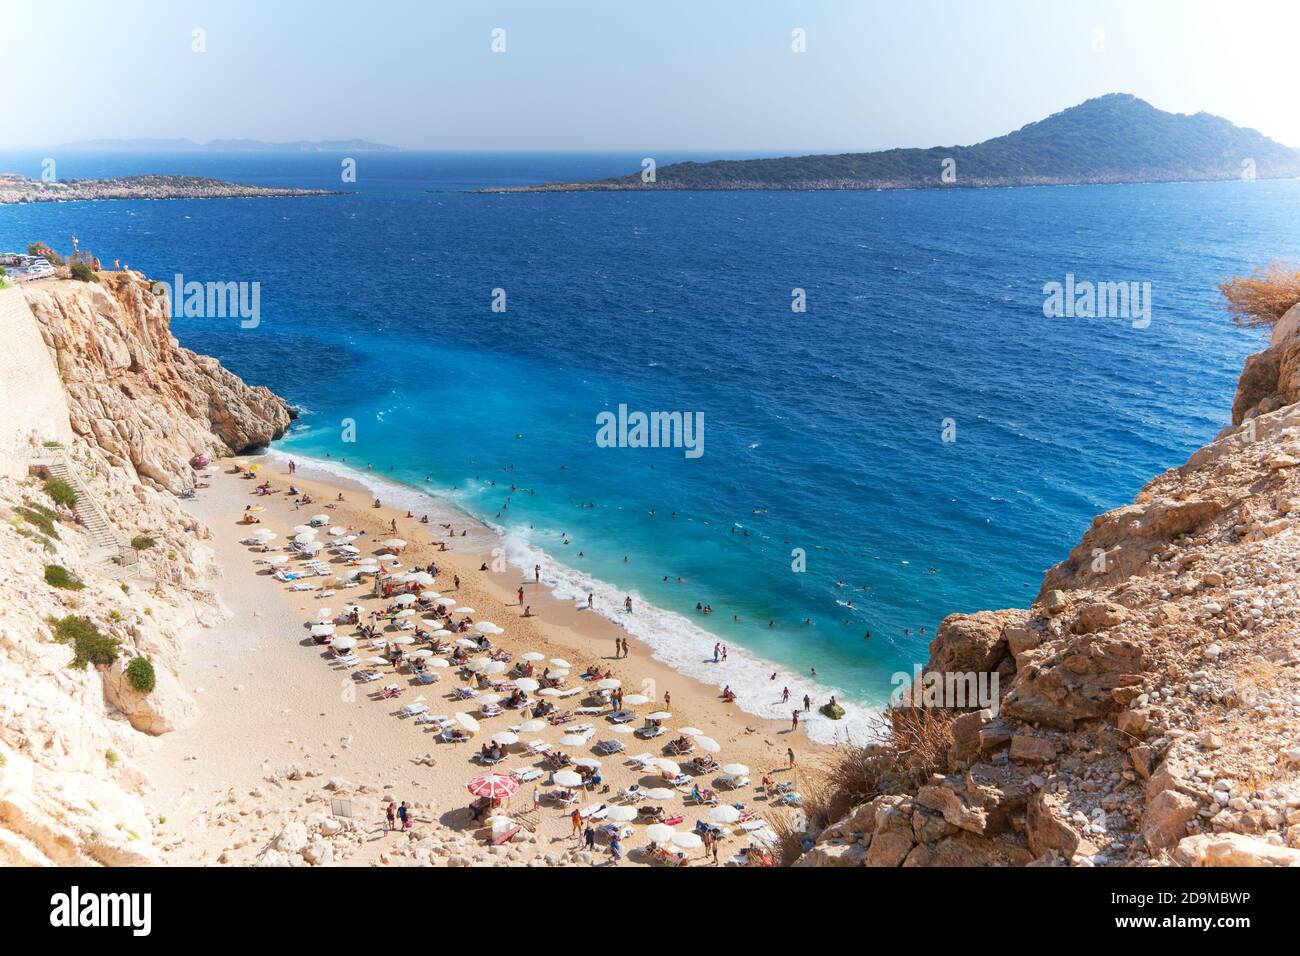 La plage numéro un en Turquie, Kaputas plage vue aérienne sur la côte turquoise Banque D'Images